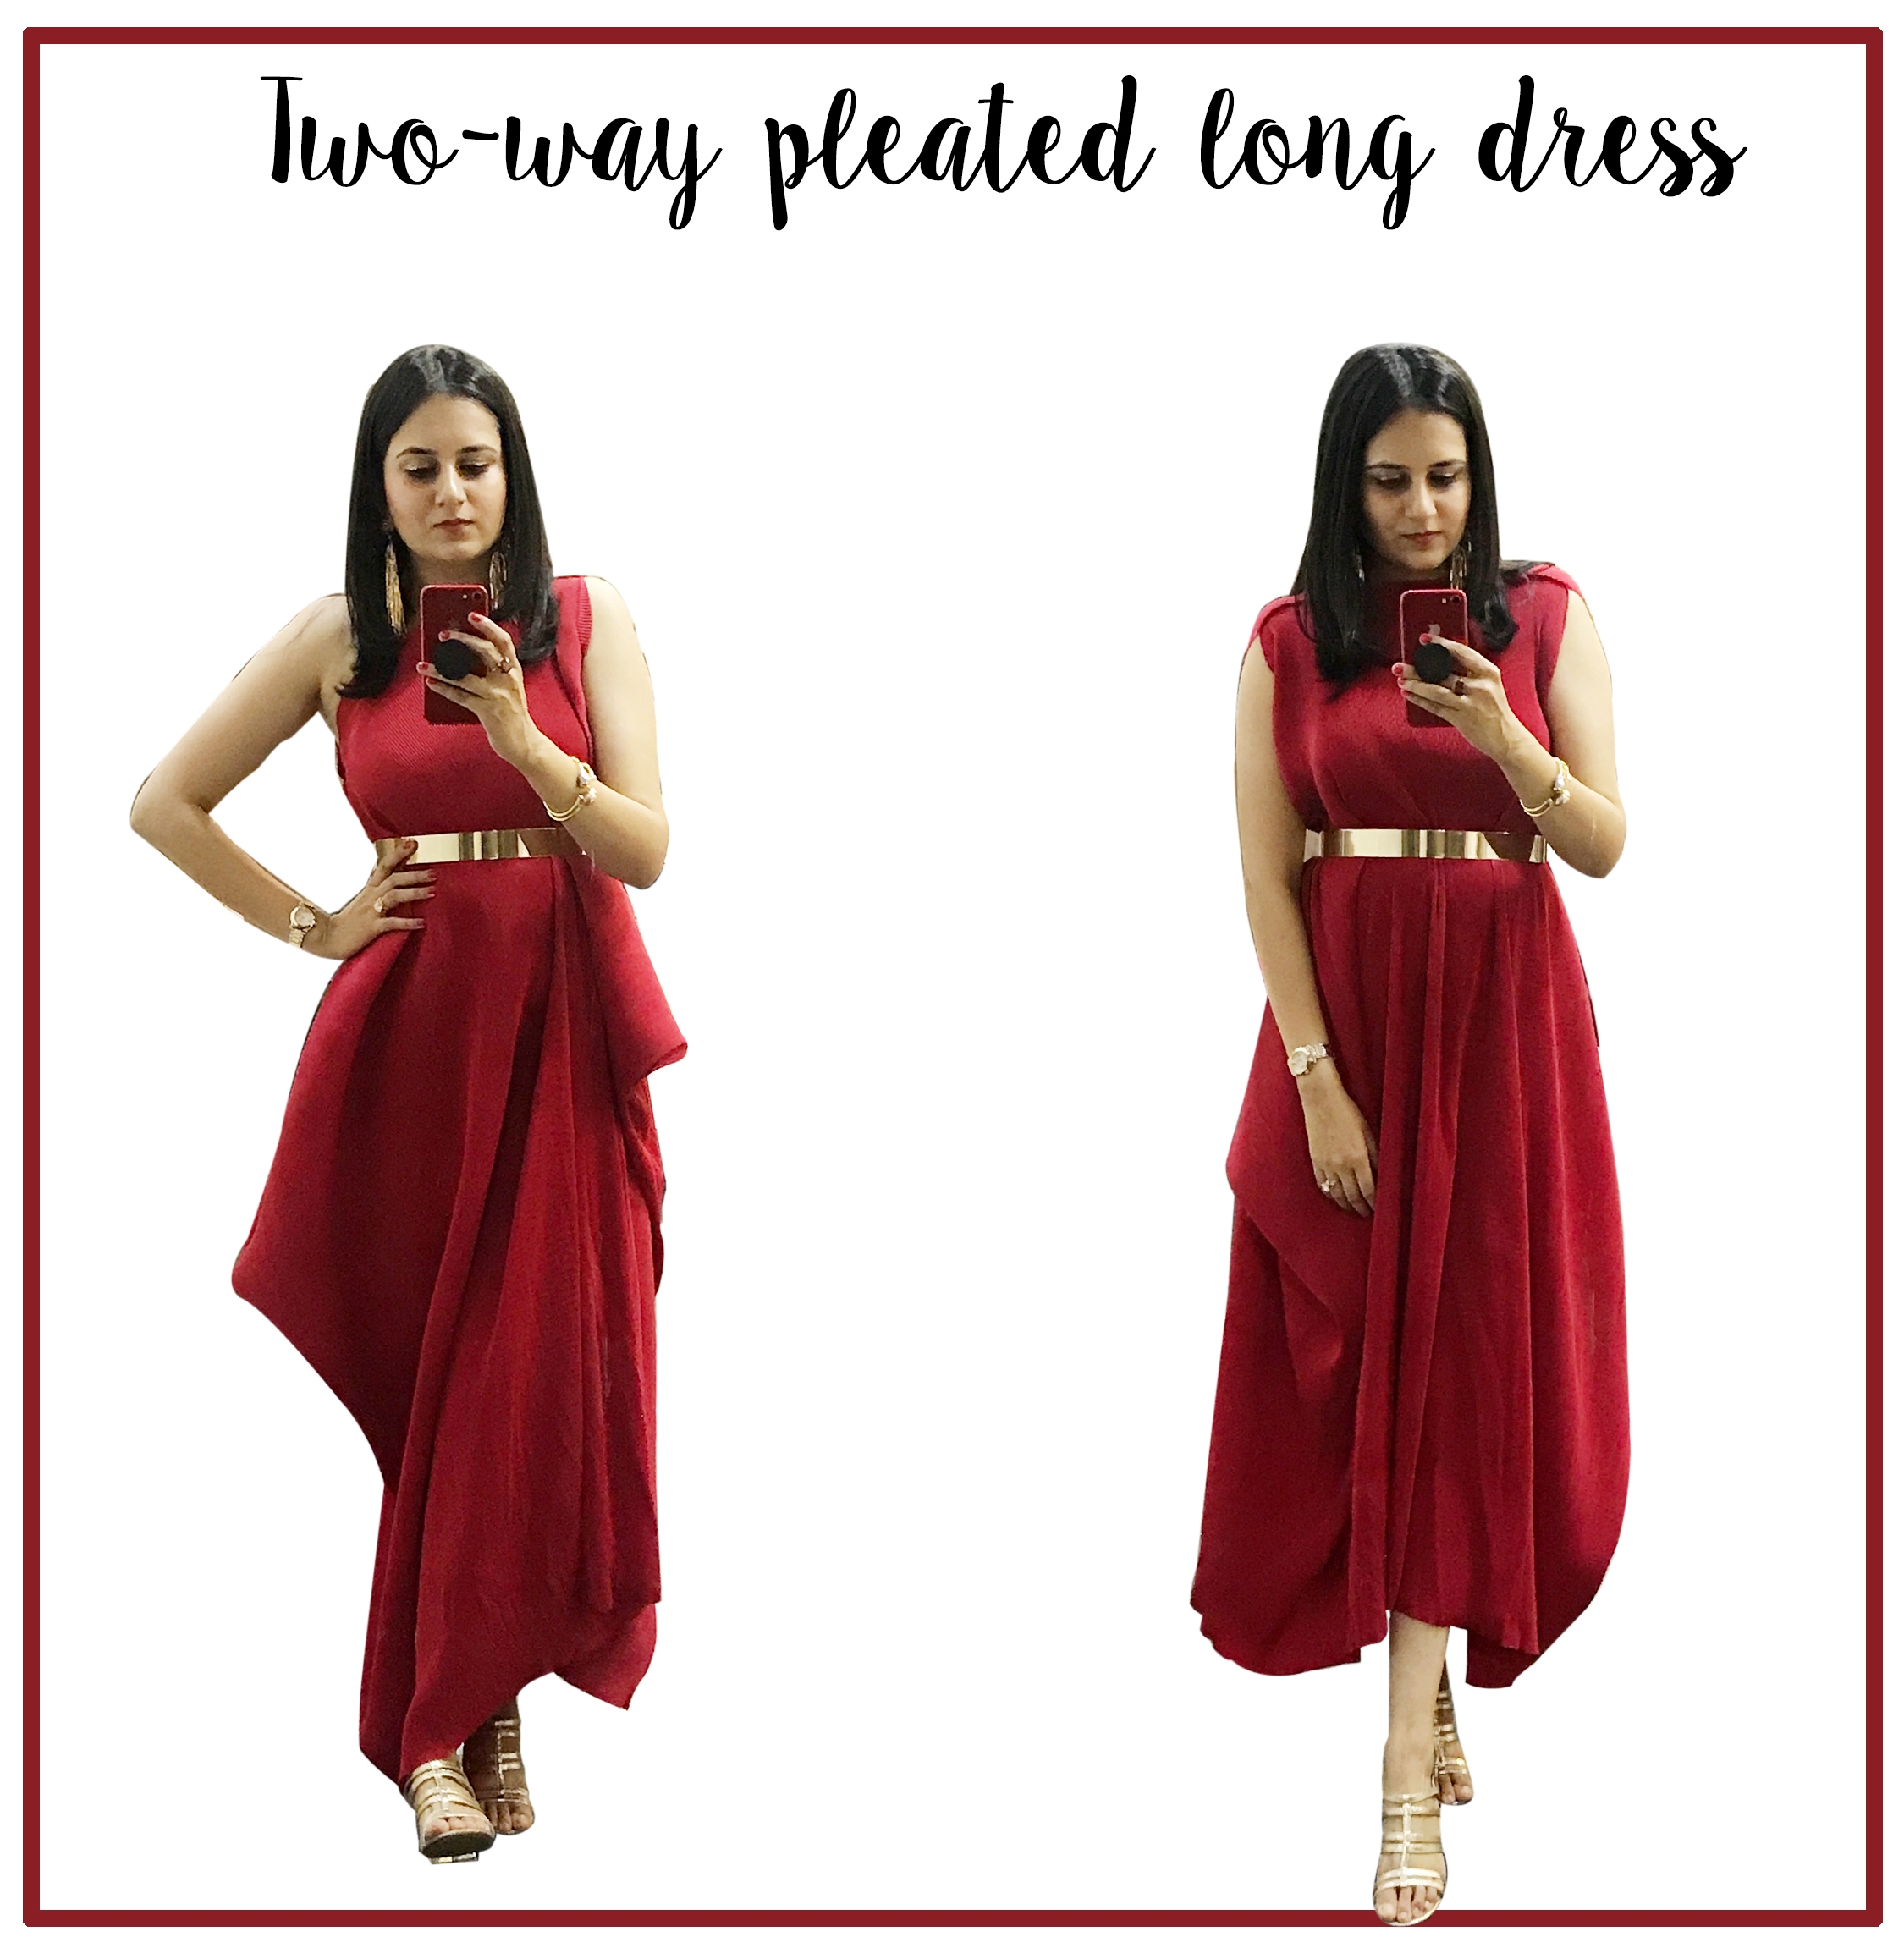 Pleated Long Dress - 2 way wearable